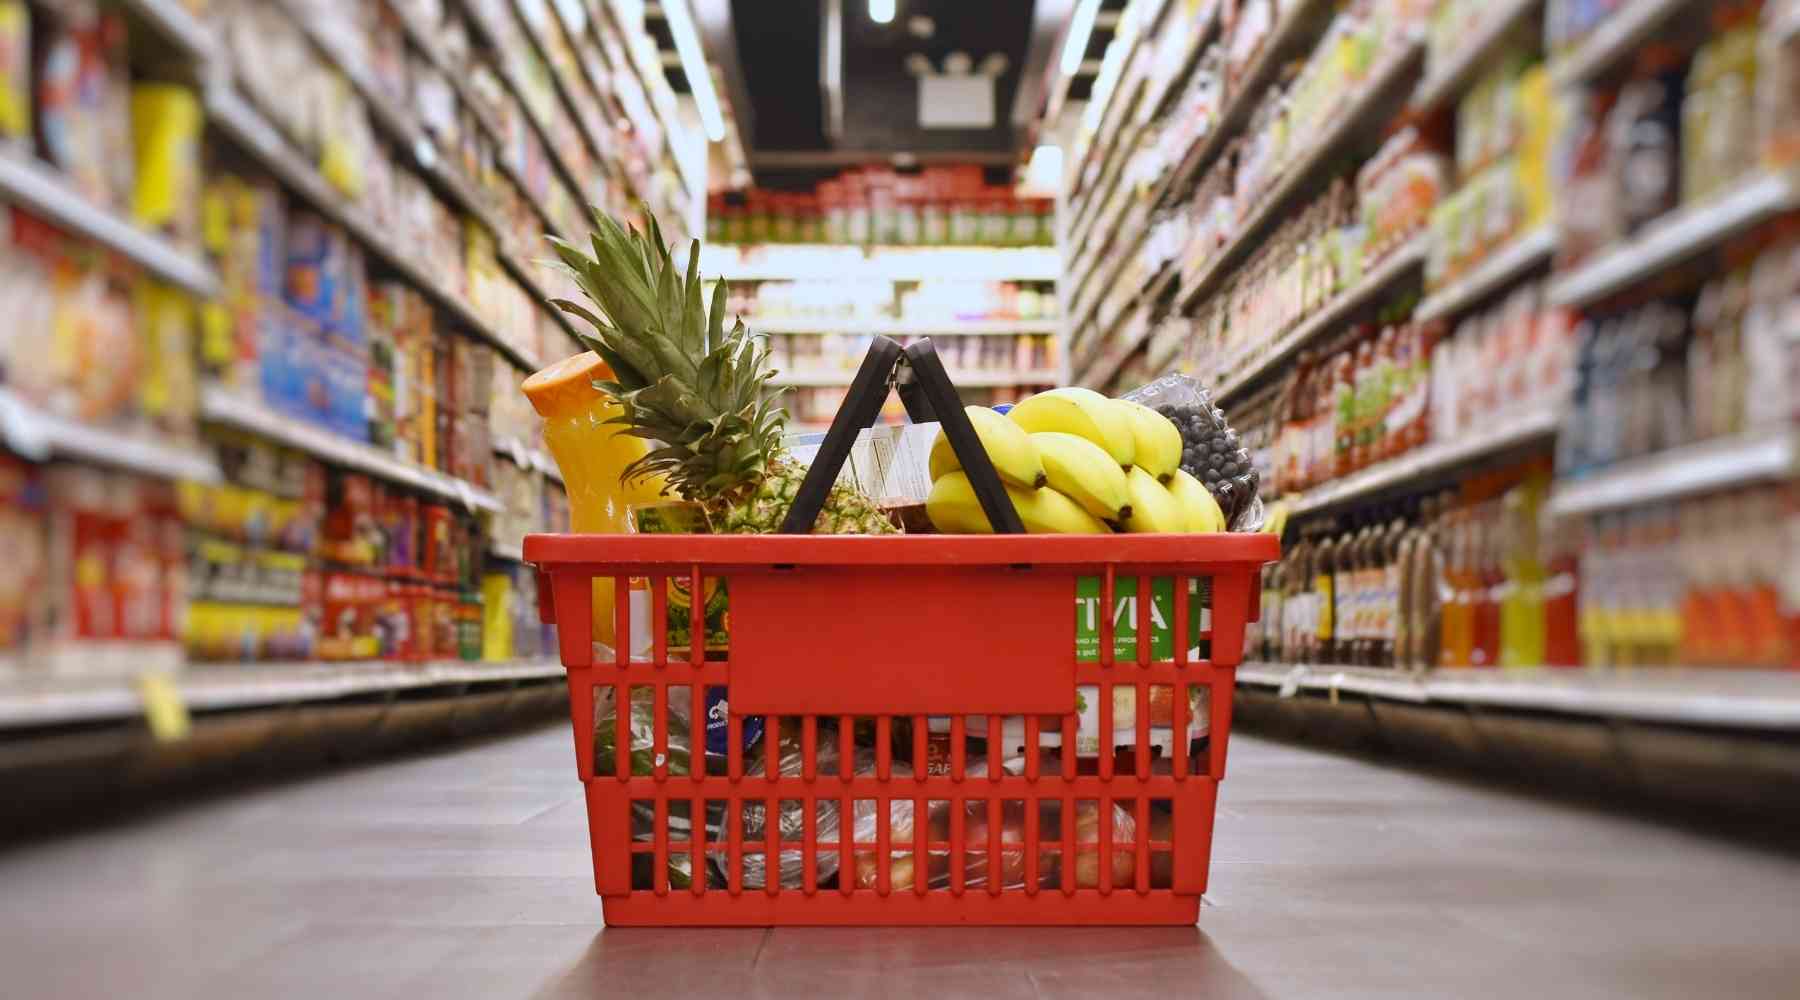 67 alimentos más baratos para ahorrar dinero [2022 Guide to Cheap Food]